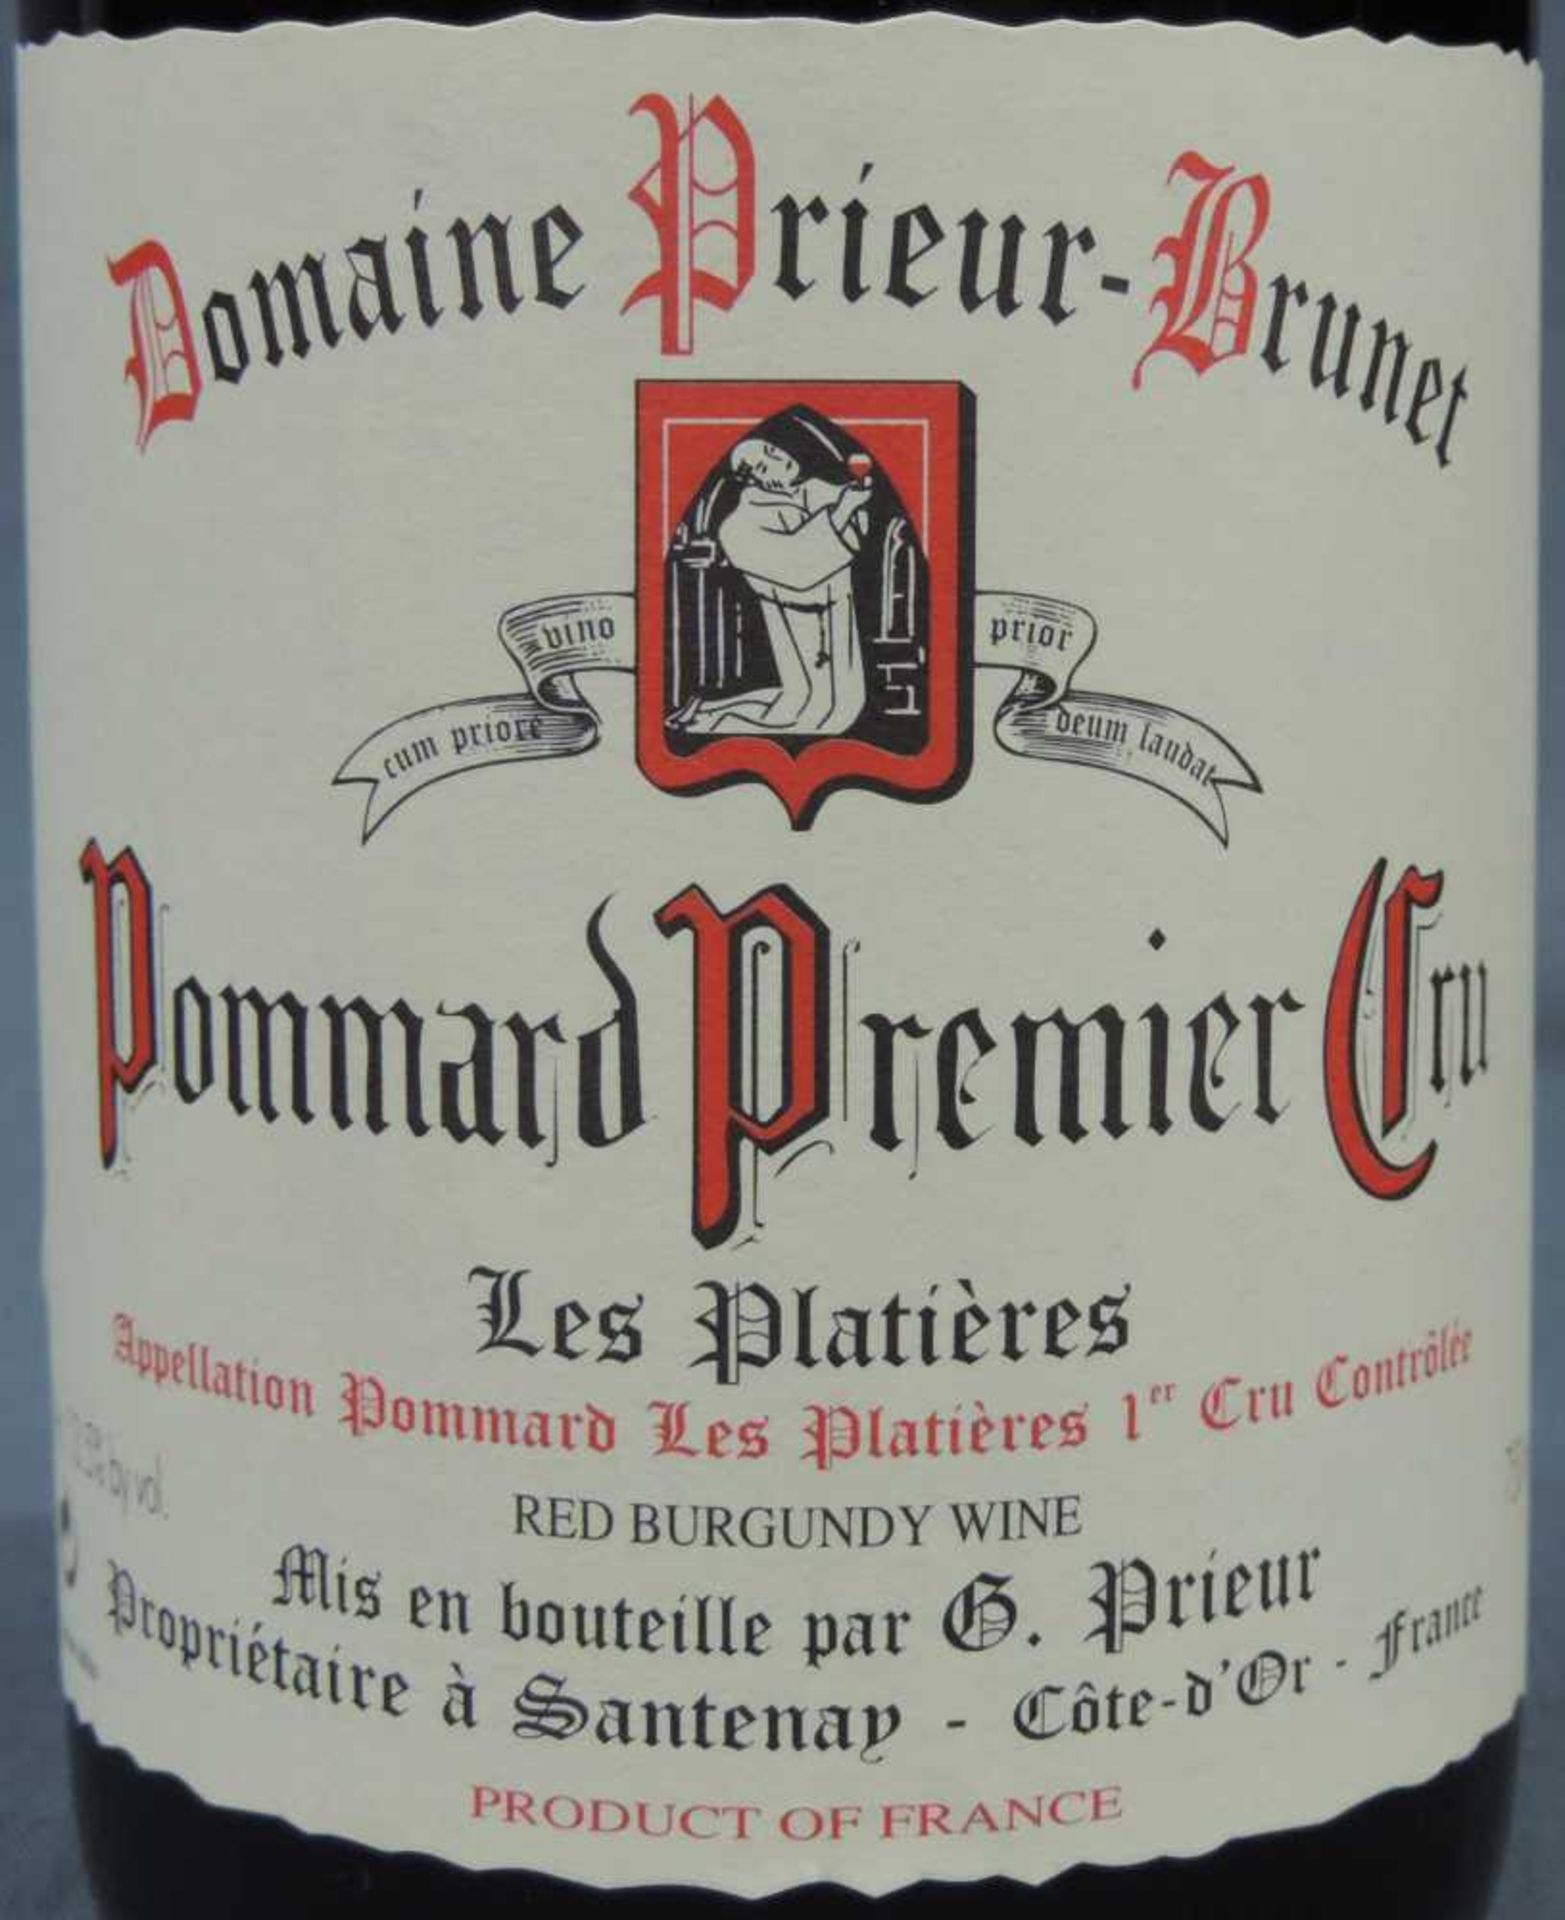 2004 Domaine Prieur - Brunet, Pommard Premier Cru Les Platieres, France. 10 Flaschen, 750 ml, - Image 3 of 6